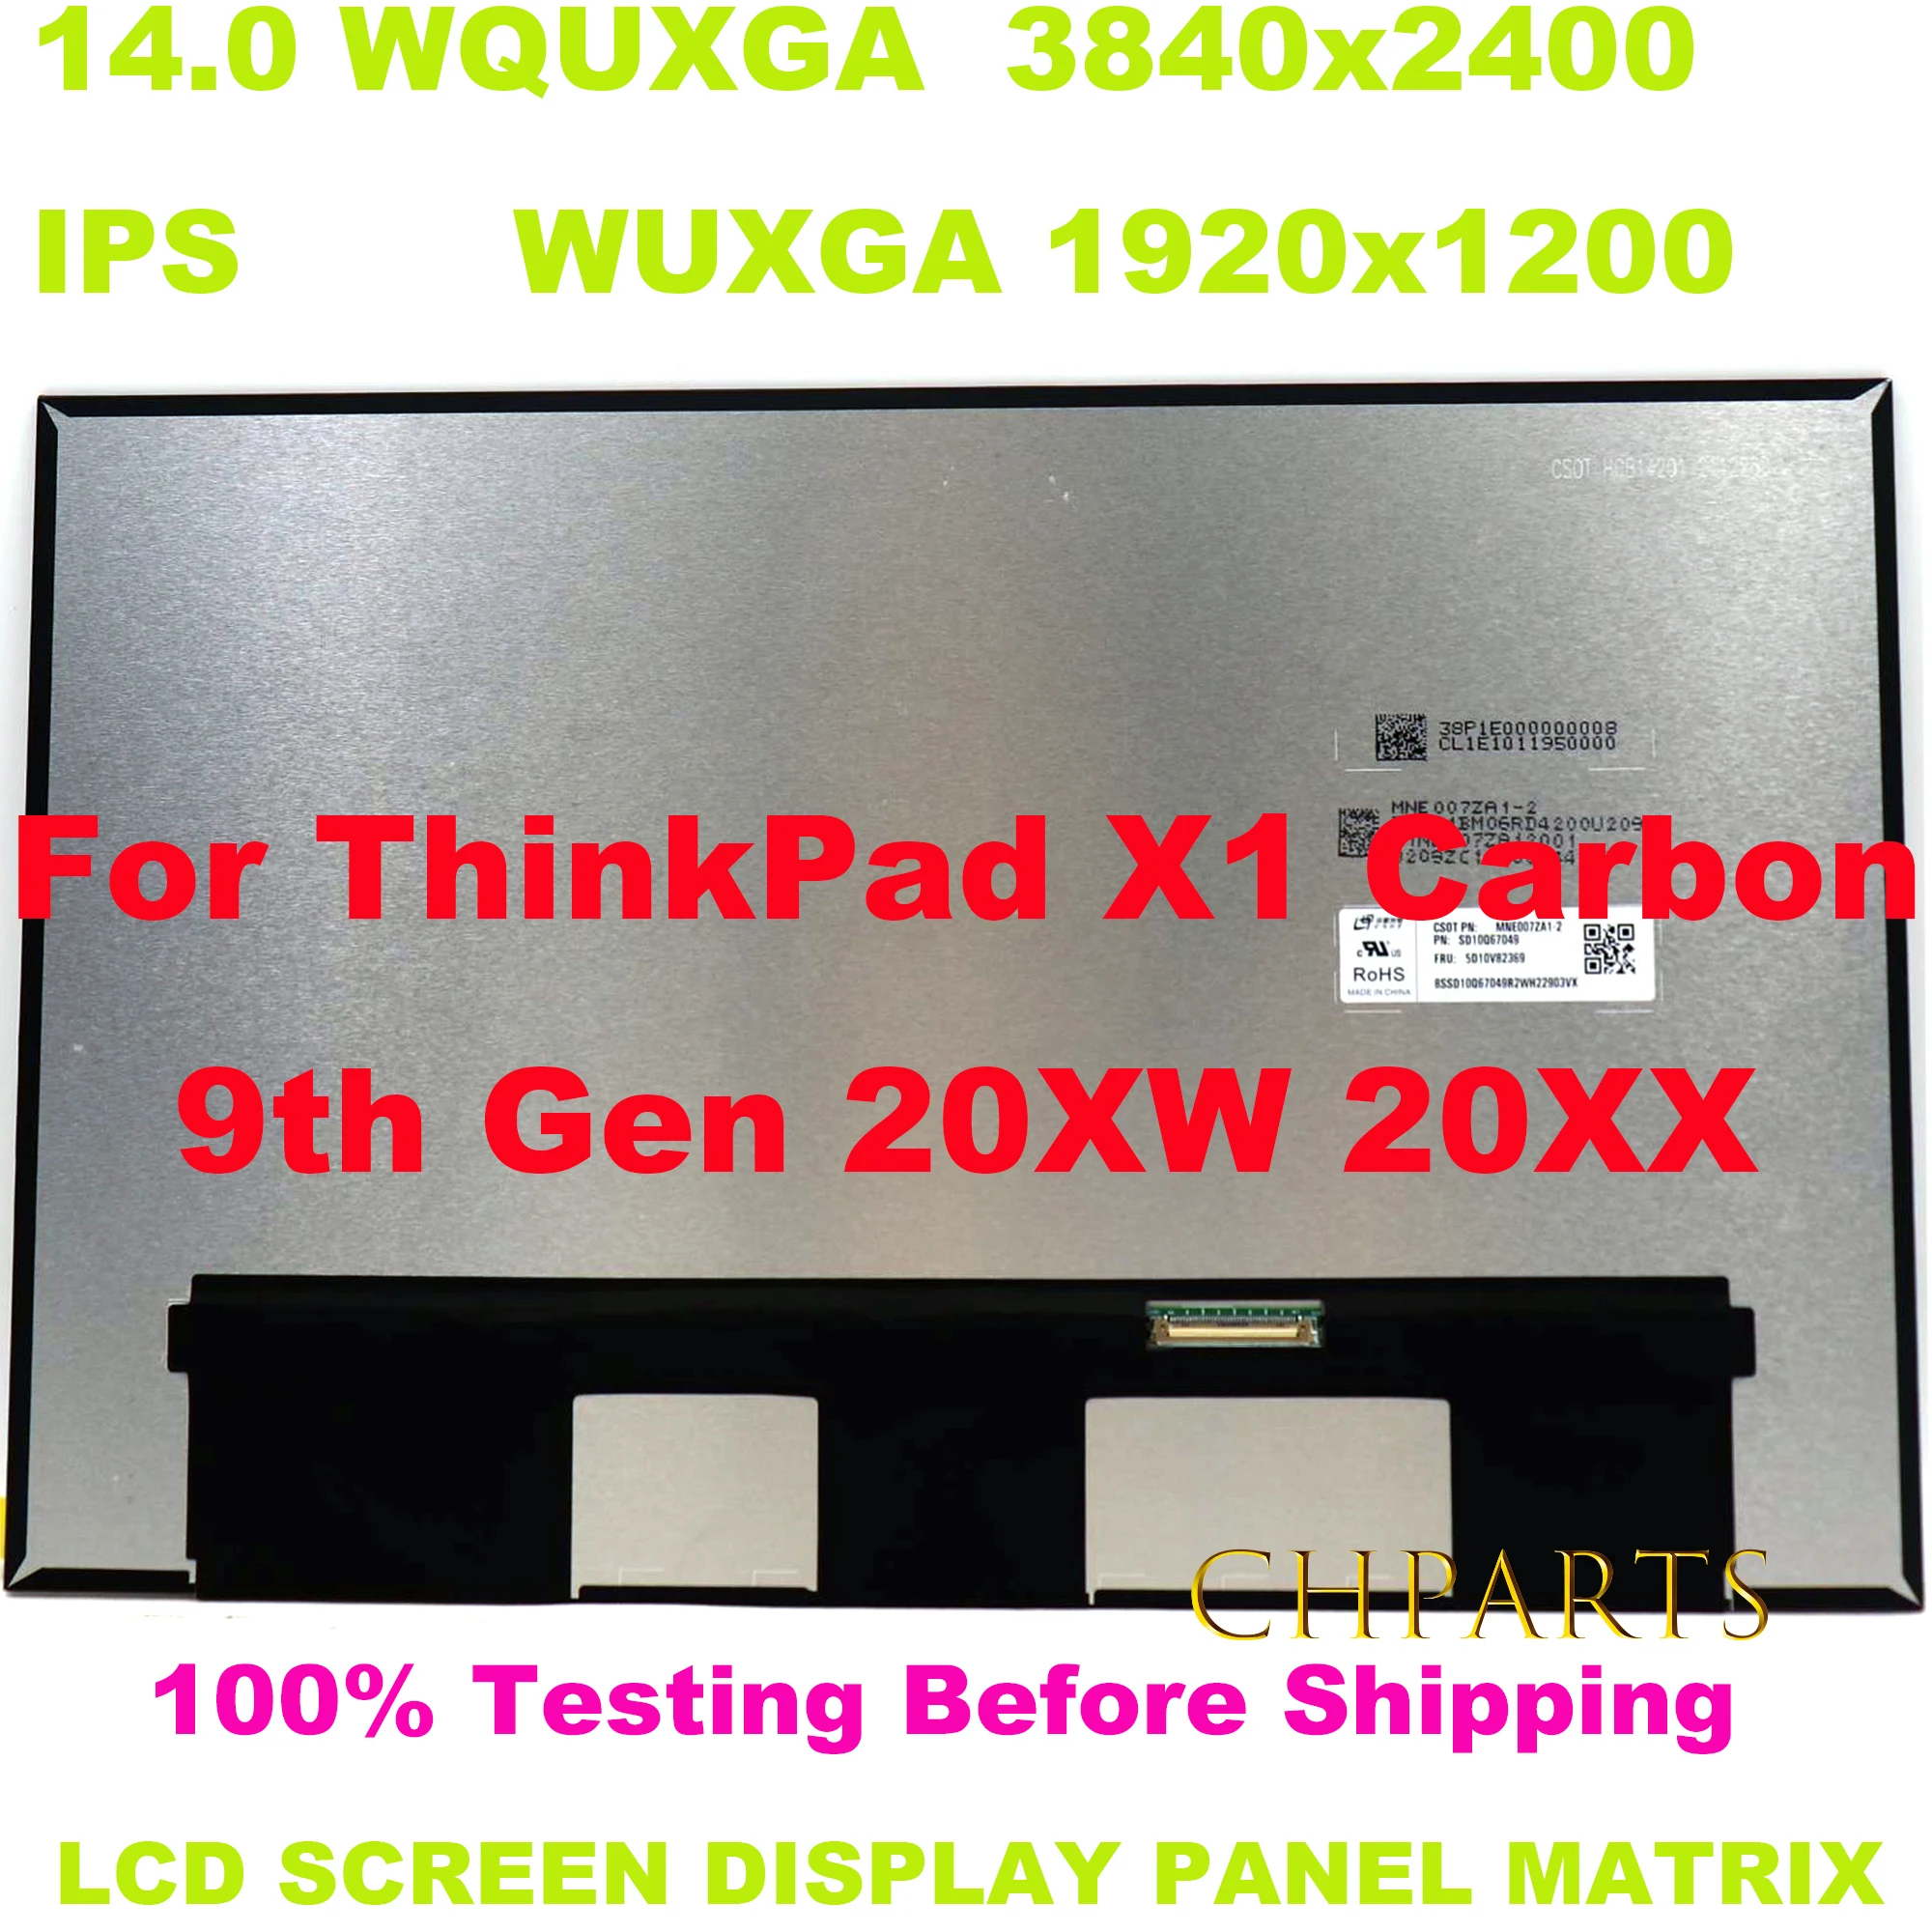     Lenovo Thinkpad X1 Carbon, 14 , 20XW 20XX WQUXGA WUXGA 16:10 IPS 100% sRGB